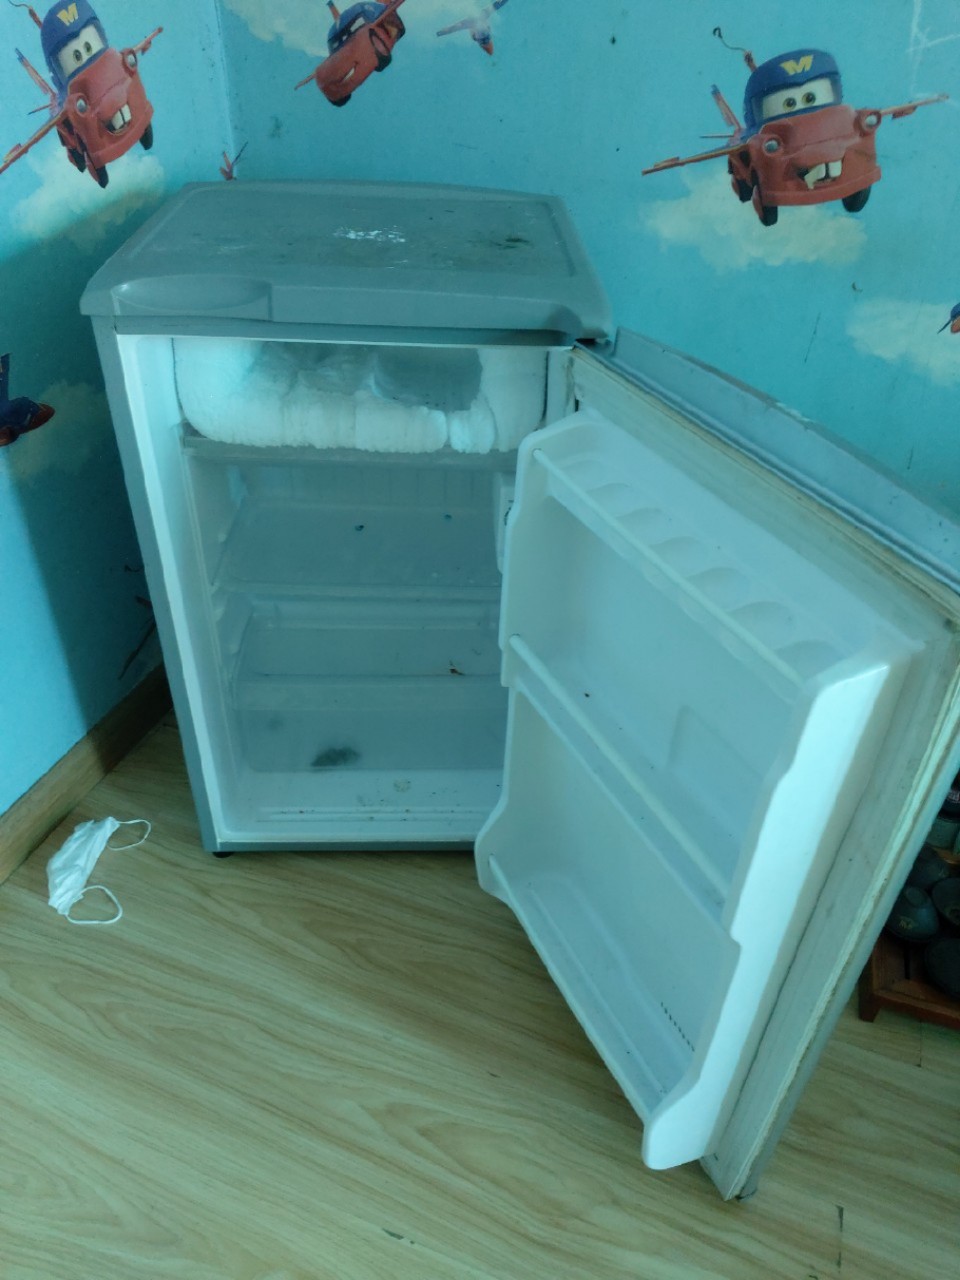 Tủ lạnh Sanyo 90 lít SR-9JR(MS) cũ SP017799